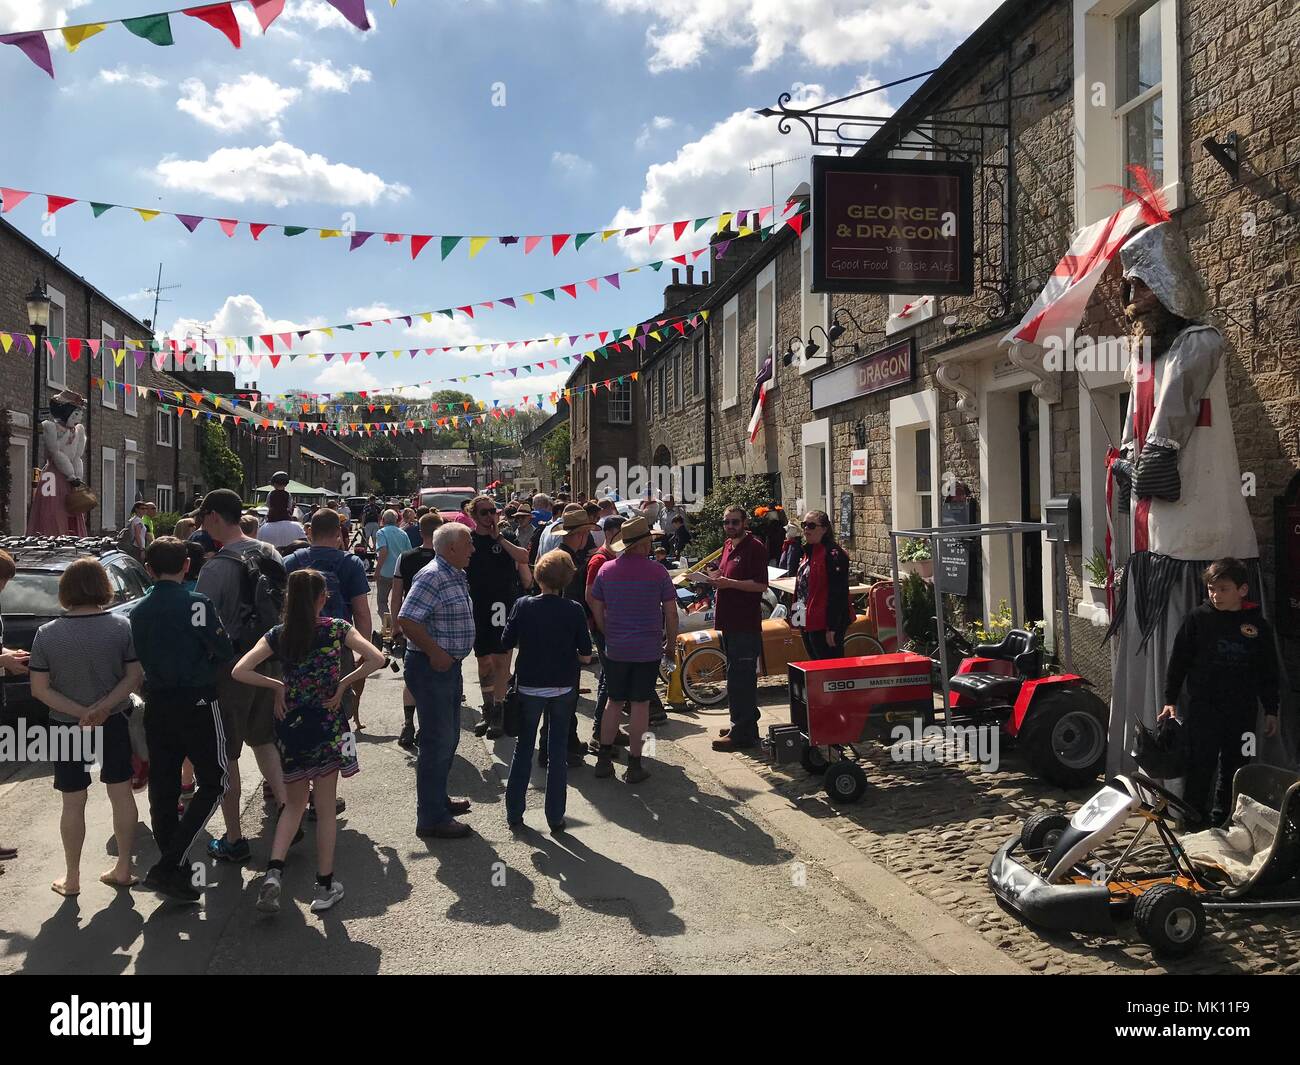 WRAY, Lancashire, Royaume-Uni. 06/05/2018. Les visiteurs du Festival annuel en 2018, l'épouvantail de l'arrêt Wray, tenue à Wray village, Lancashire, UK Banque D'Images